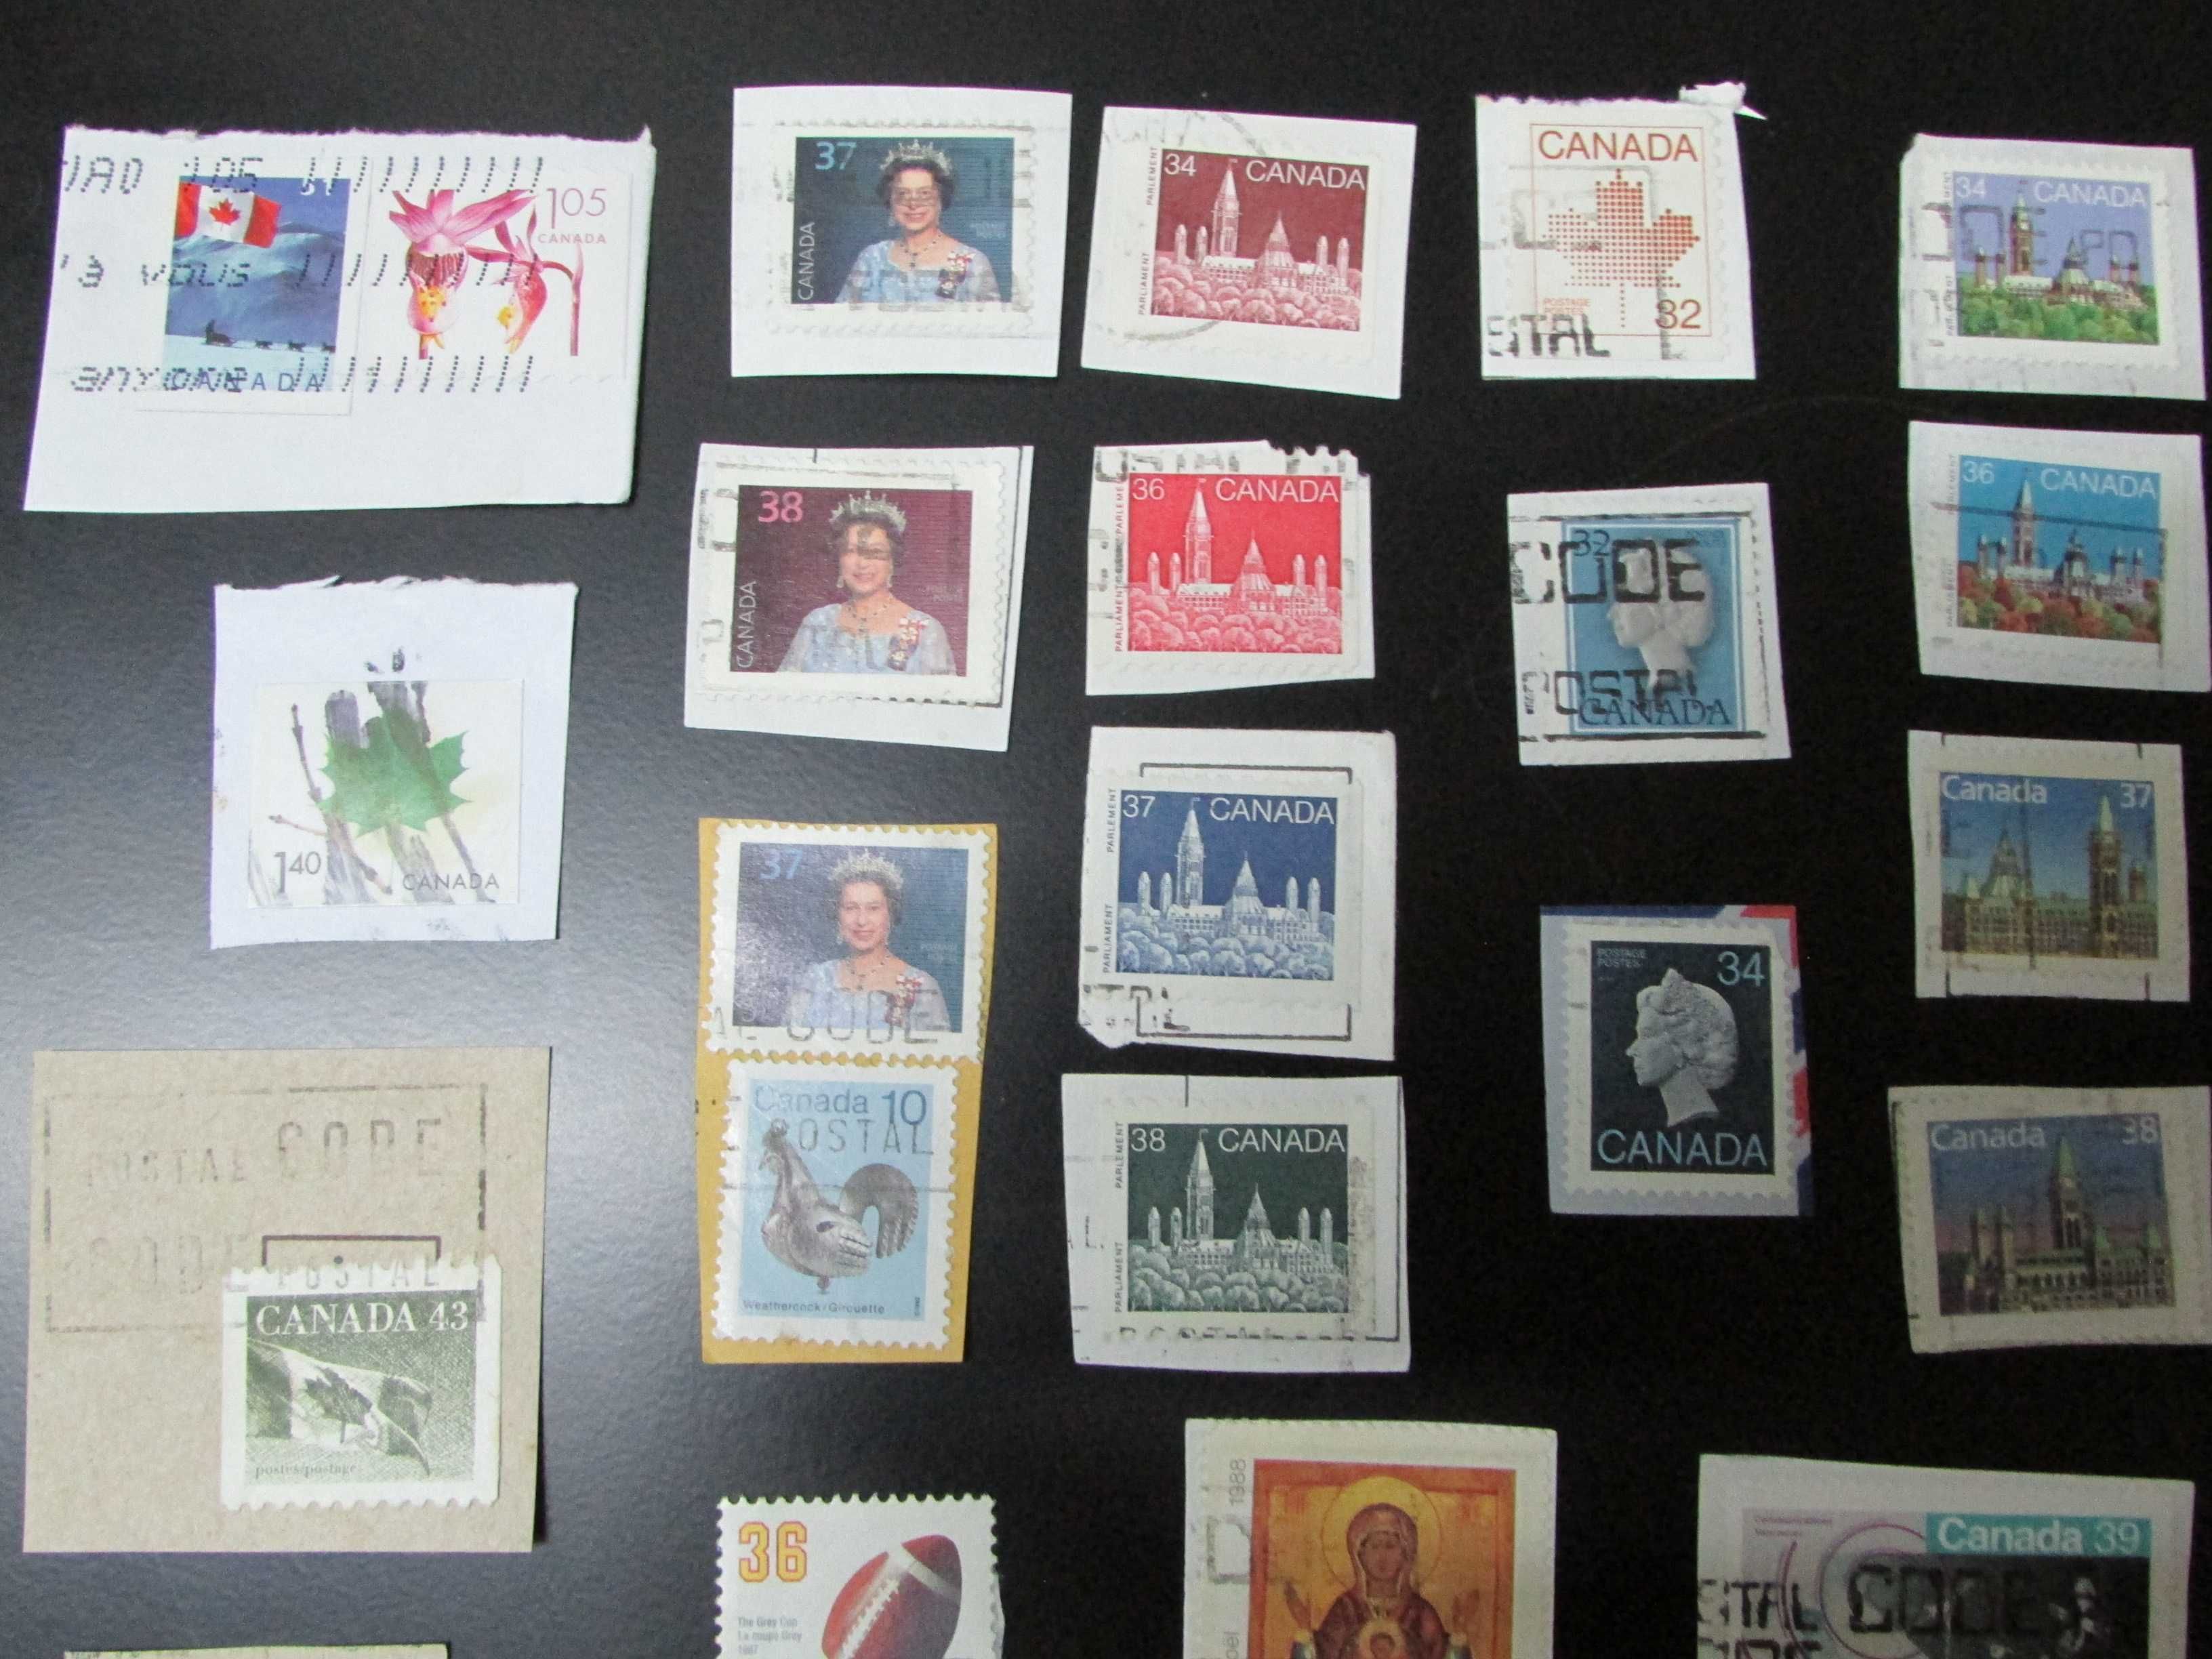 Filatelia: Lote 6 - Canadá, cerca 70 selos usados colados em papel